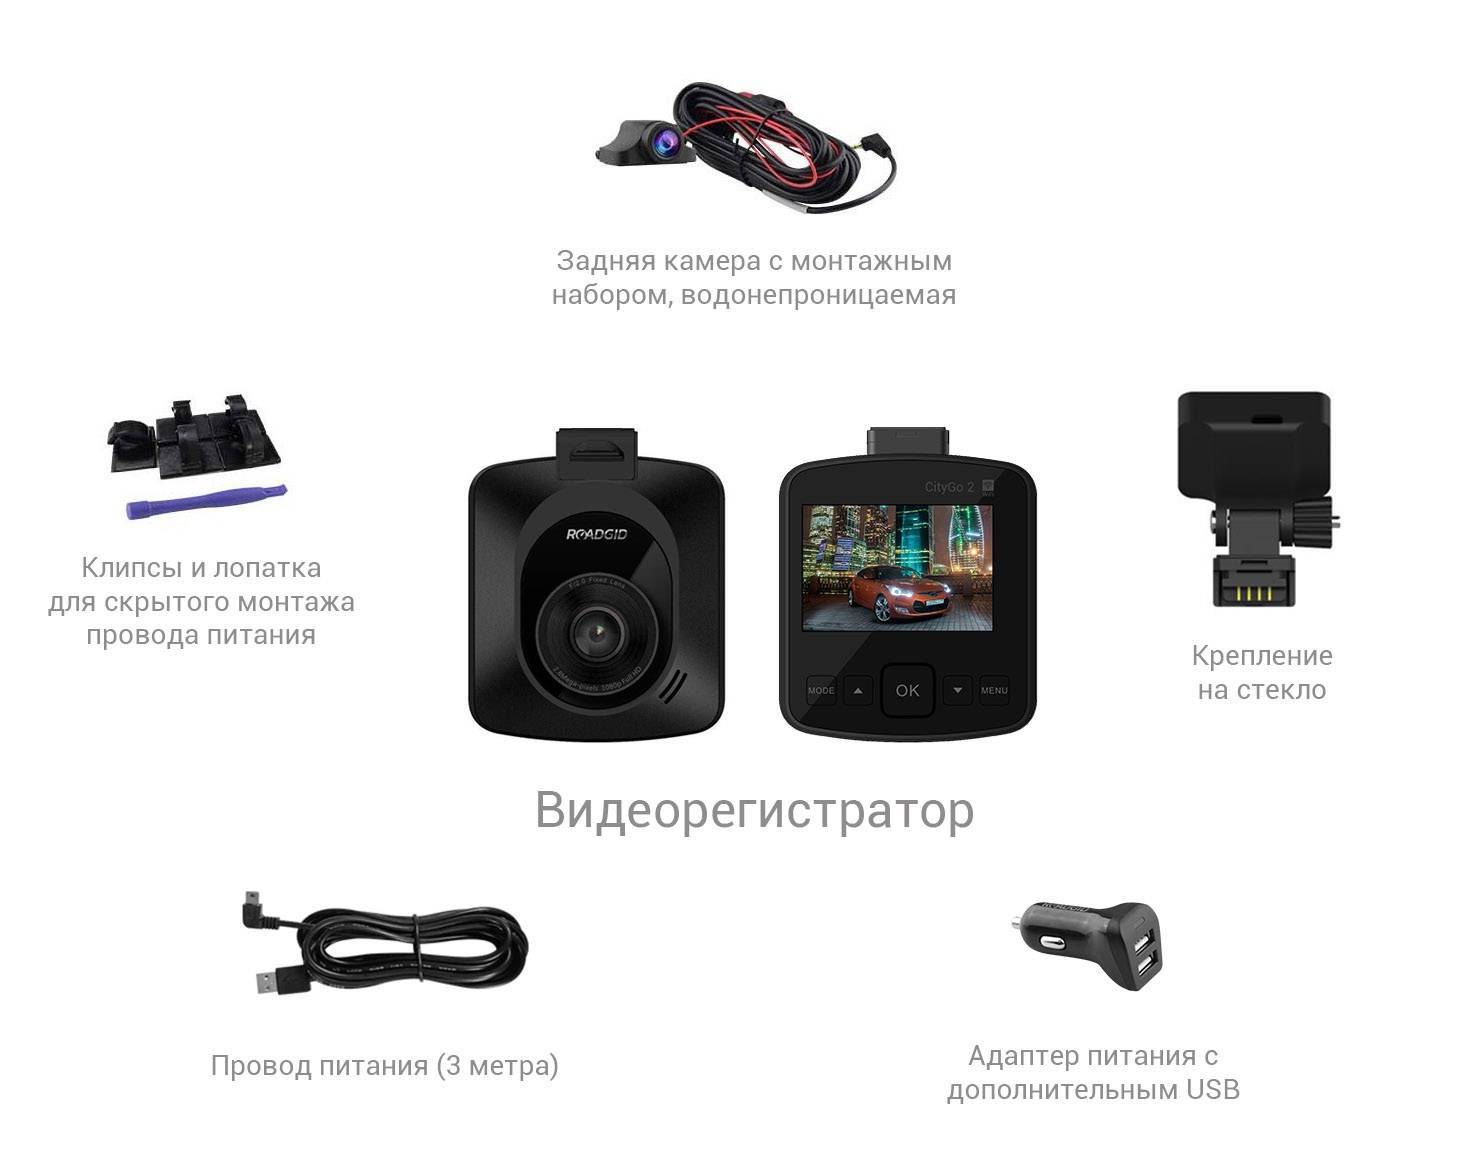 Отзывы на roadgid citygo 2 от владельцев видеорегистратора со speedcam и wi-fi